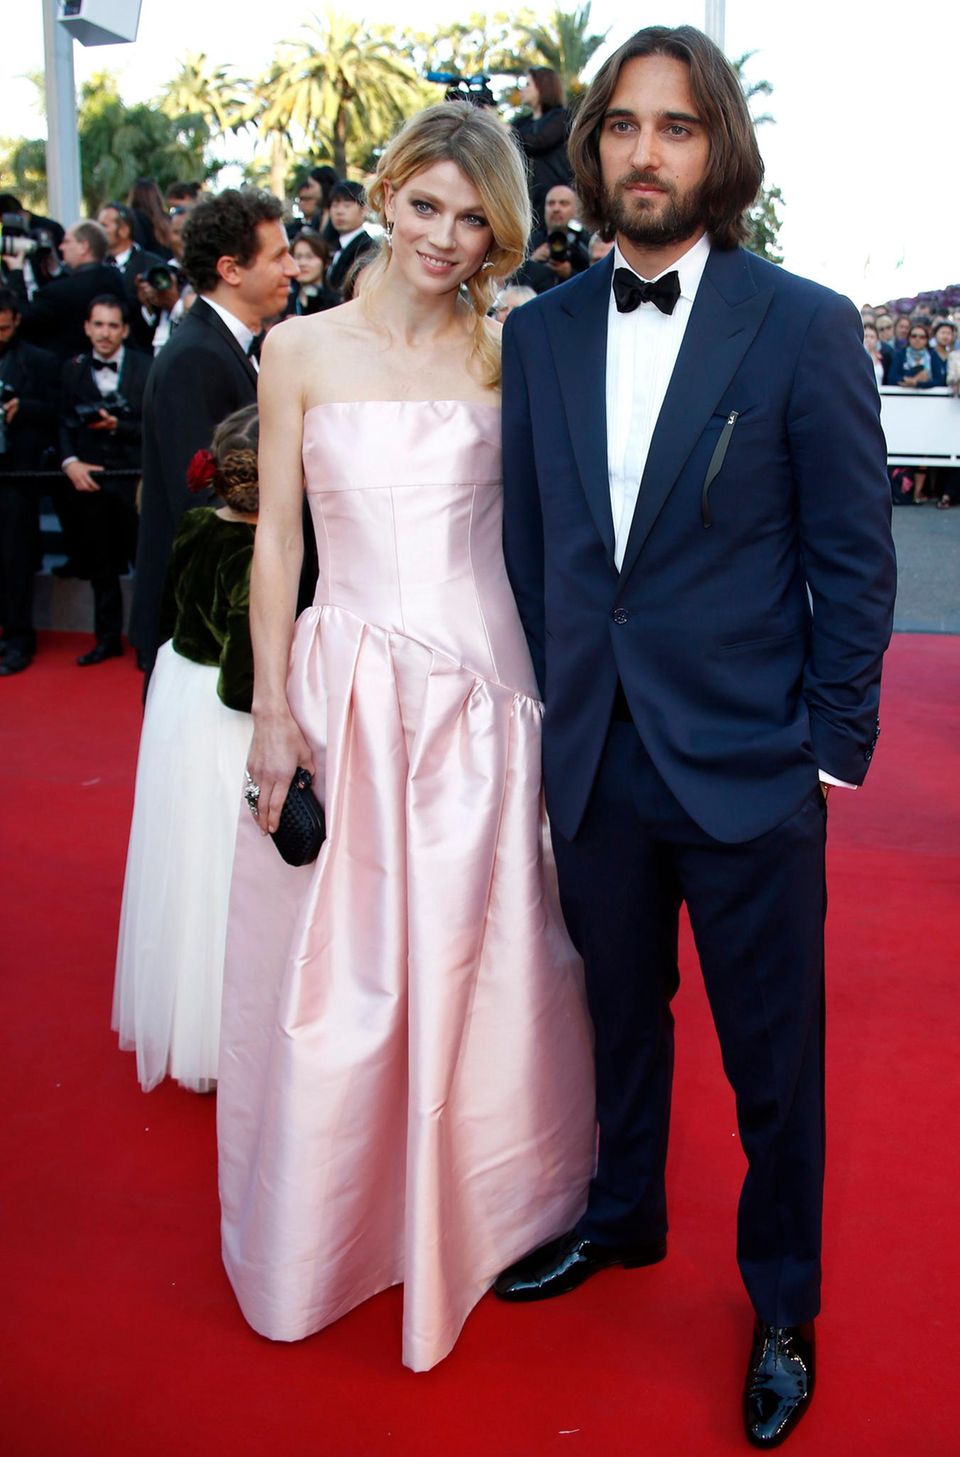 Nach dem Gruppenfoto posiert Dimitri Rassam mit seiner Ehefrau Masha Novoselova auf dem roten Teppich von Cannes. Dass er die Filmfestspiele nur vier Jahre später an der Seite von Charlotte Casiraghi besuchen wird, wusste der Filmemacher zu diesem Zeitpunkt noch nicht.